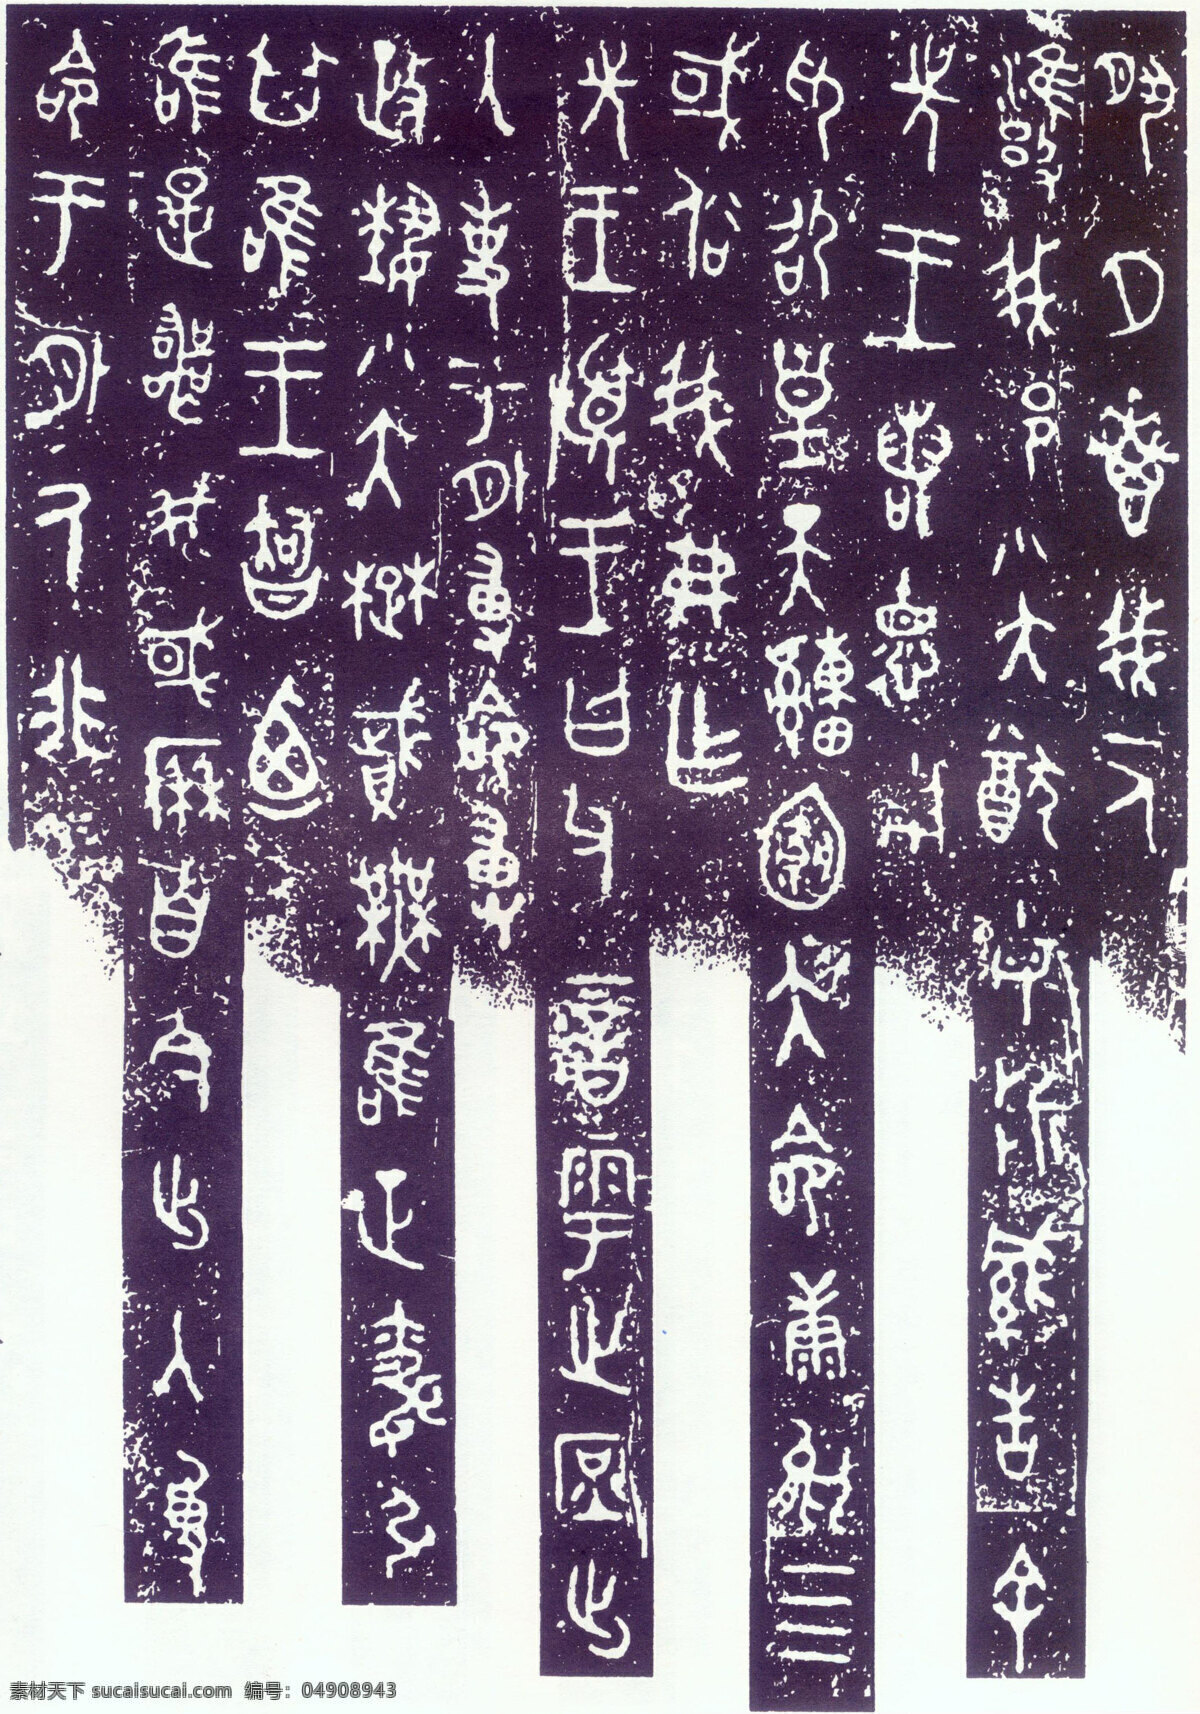 毛公鼎铭文 古汉字 书法0017 书法 设计素材 古汉字篇 书法世界 书画美术 白色